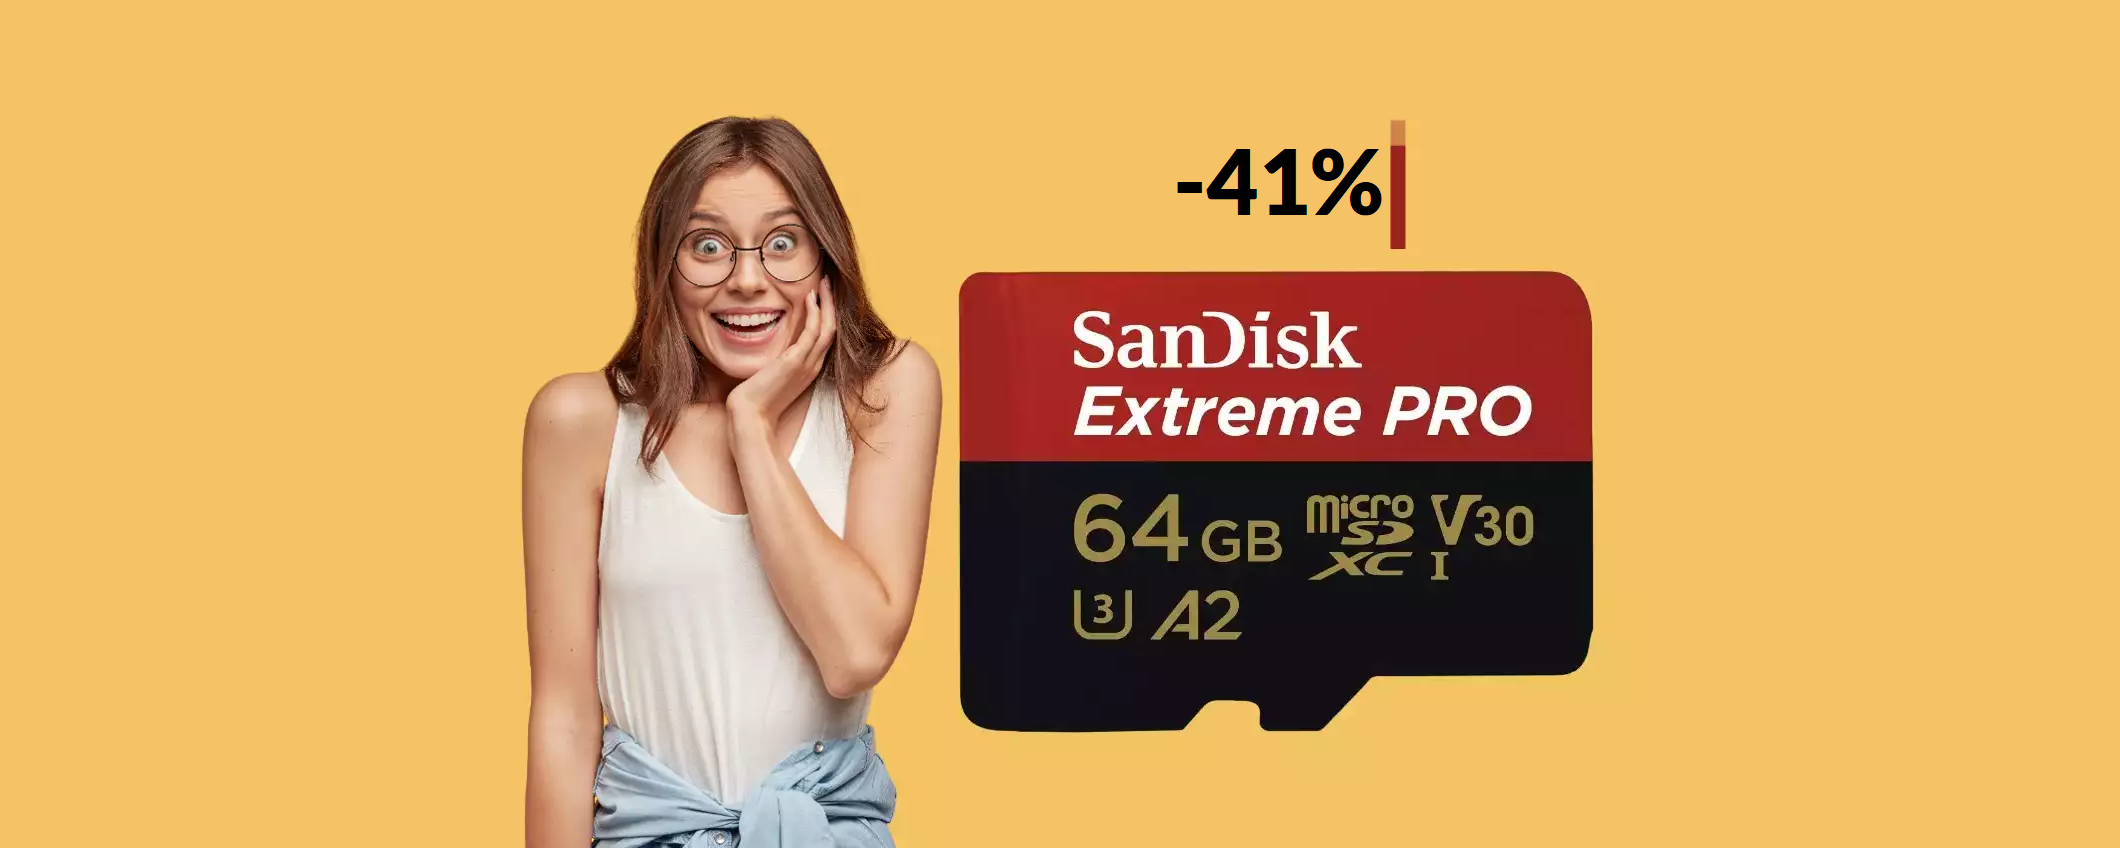 MicroSD SanDisk 64GB, un vero e proprio FULMINE: tua con 19€